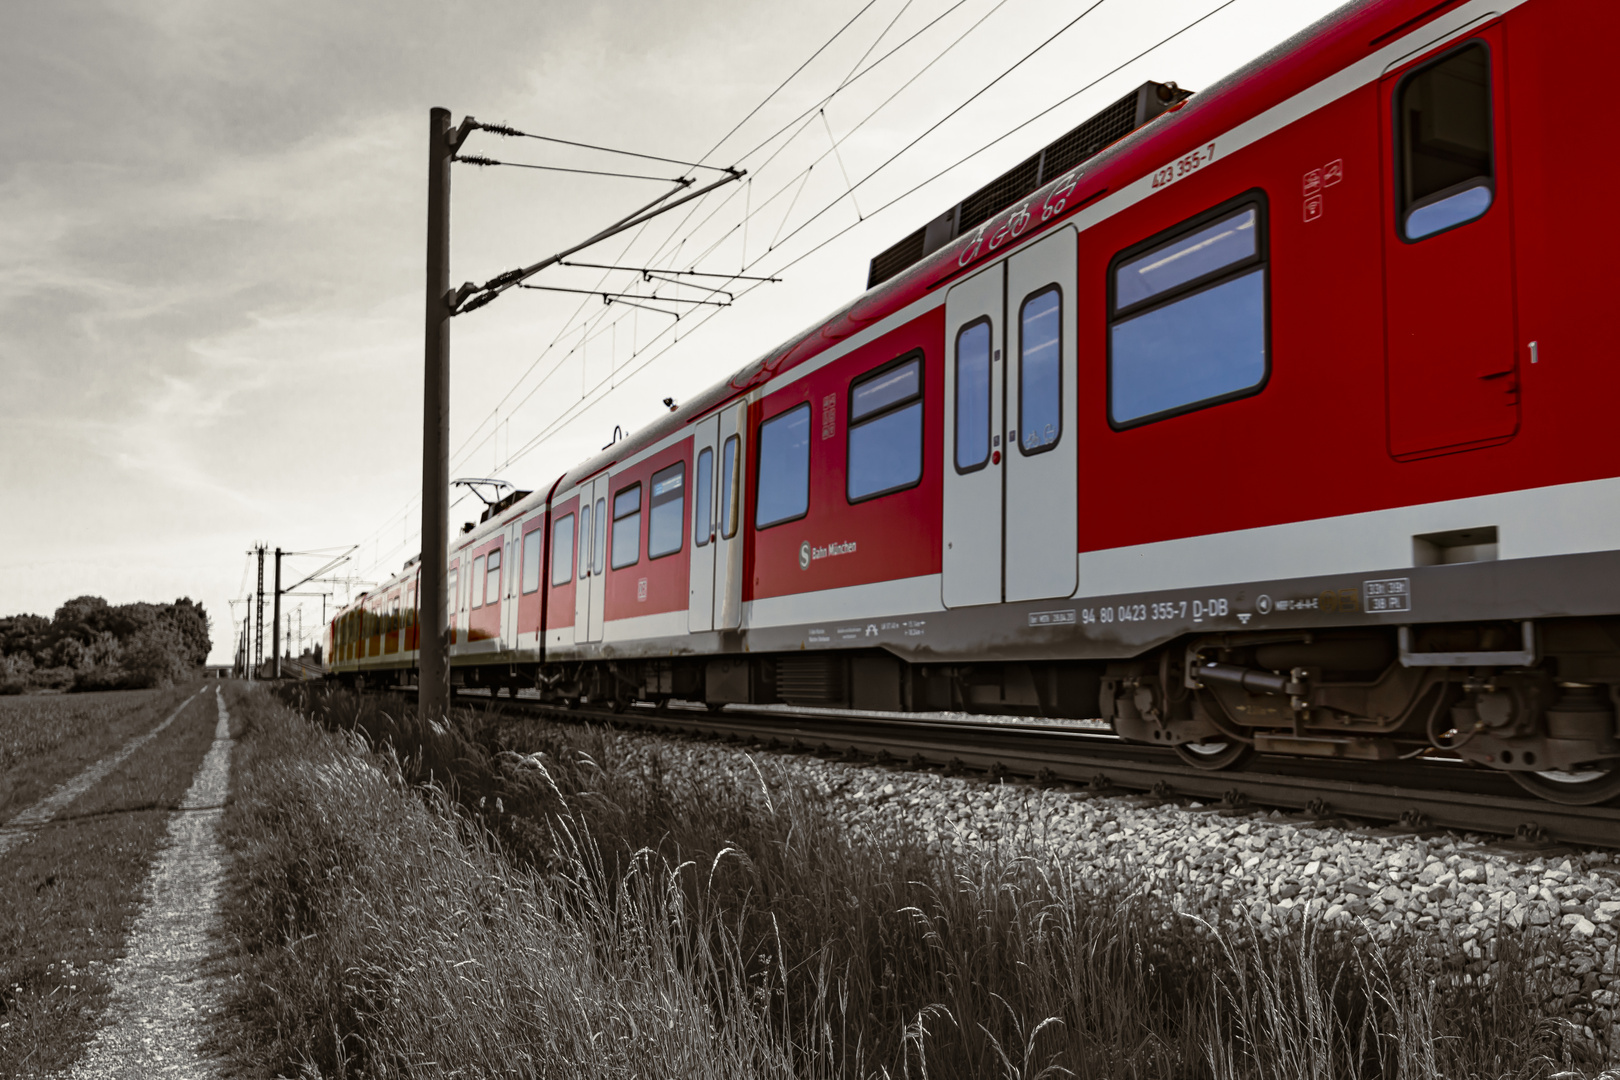 Die rote S-Bahn